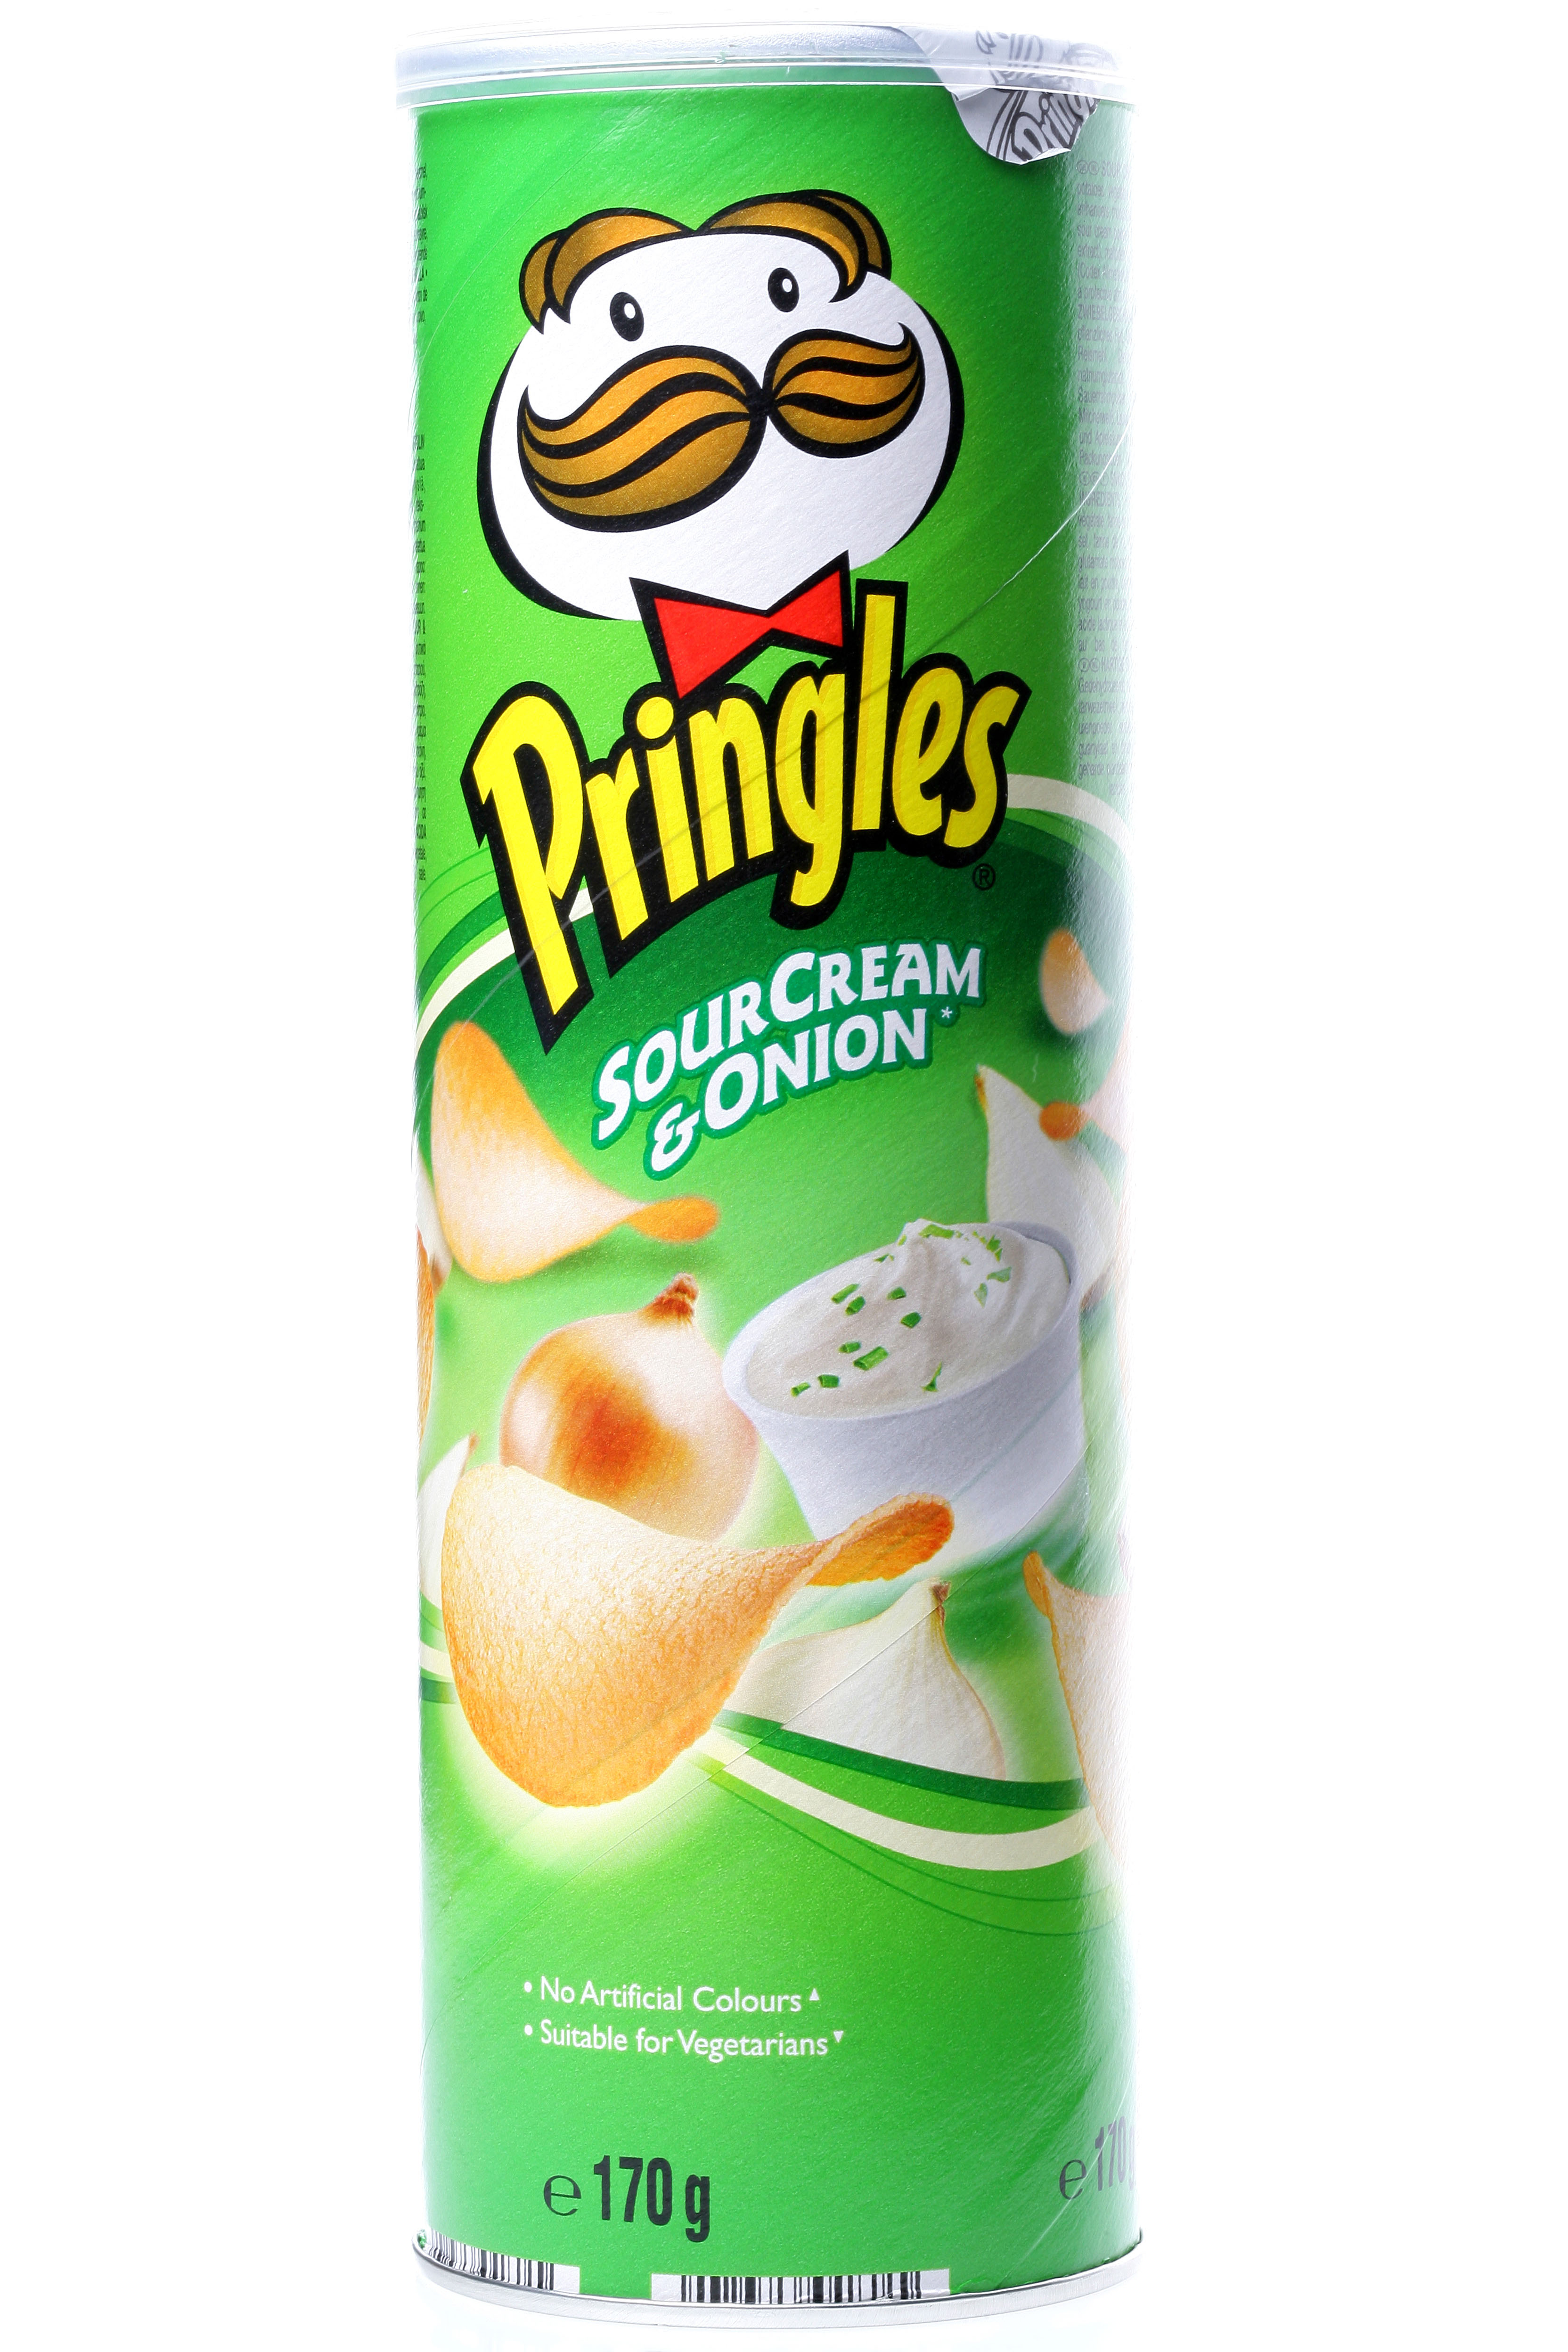 L'entreprise américaine de snacks Kellanova propose un garde-manger de produits favoris, notamment des Pop-Tarts et des Pringles